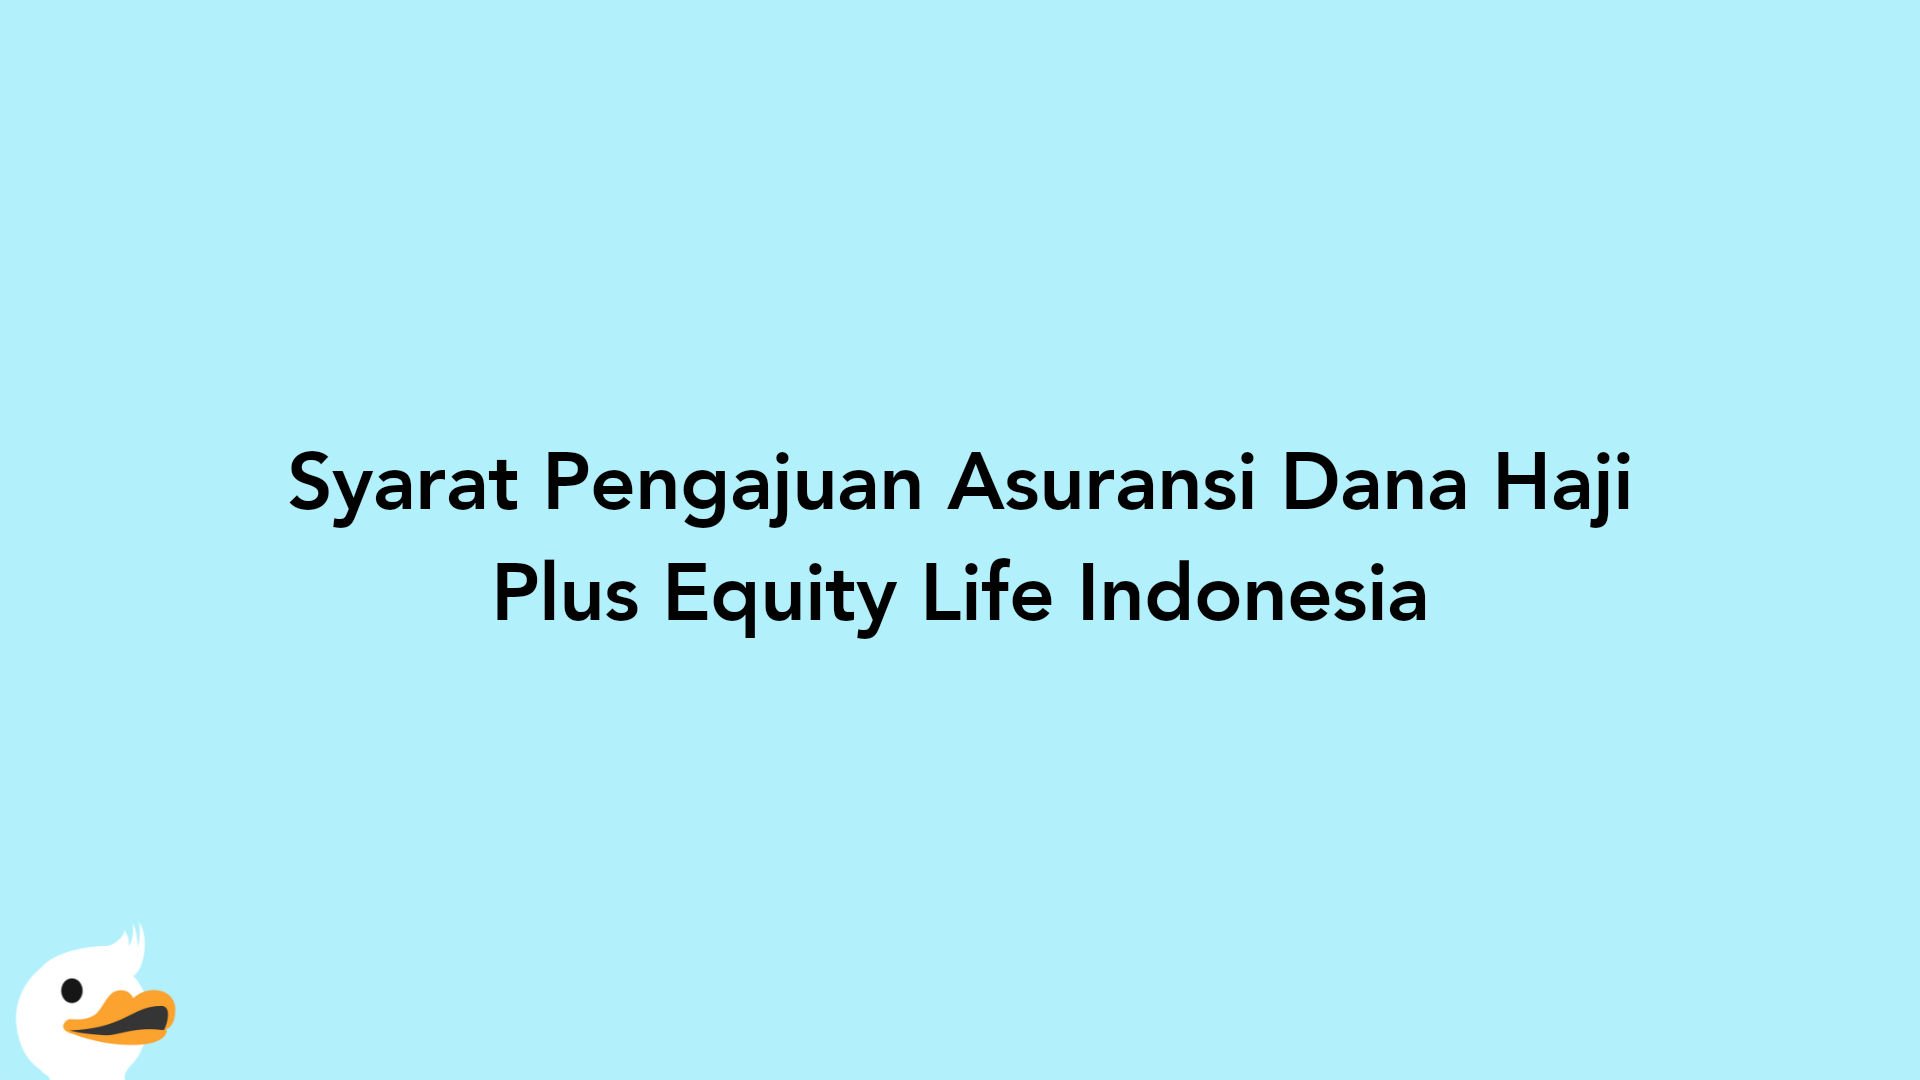 Syarat Pengajuan Asuransi Dana Haji Plus Equity Life Indonesia